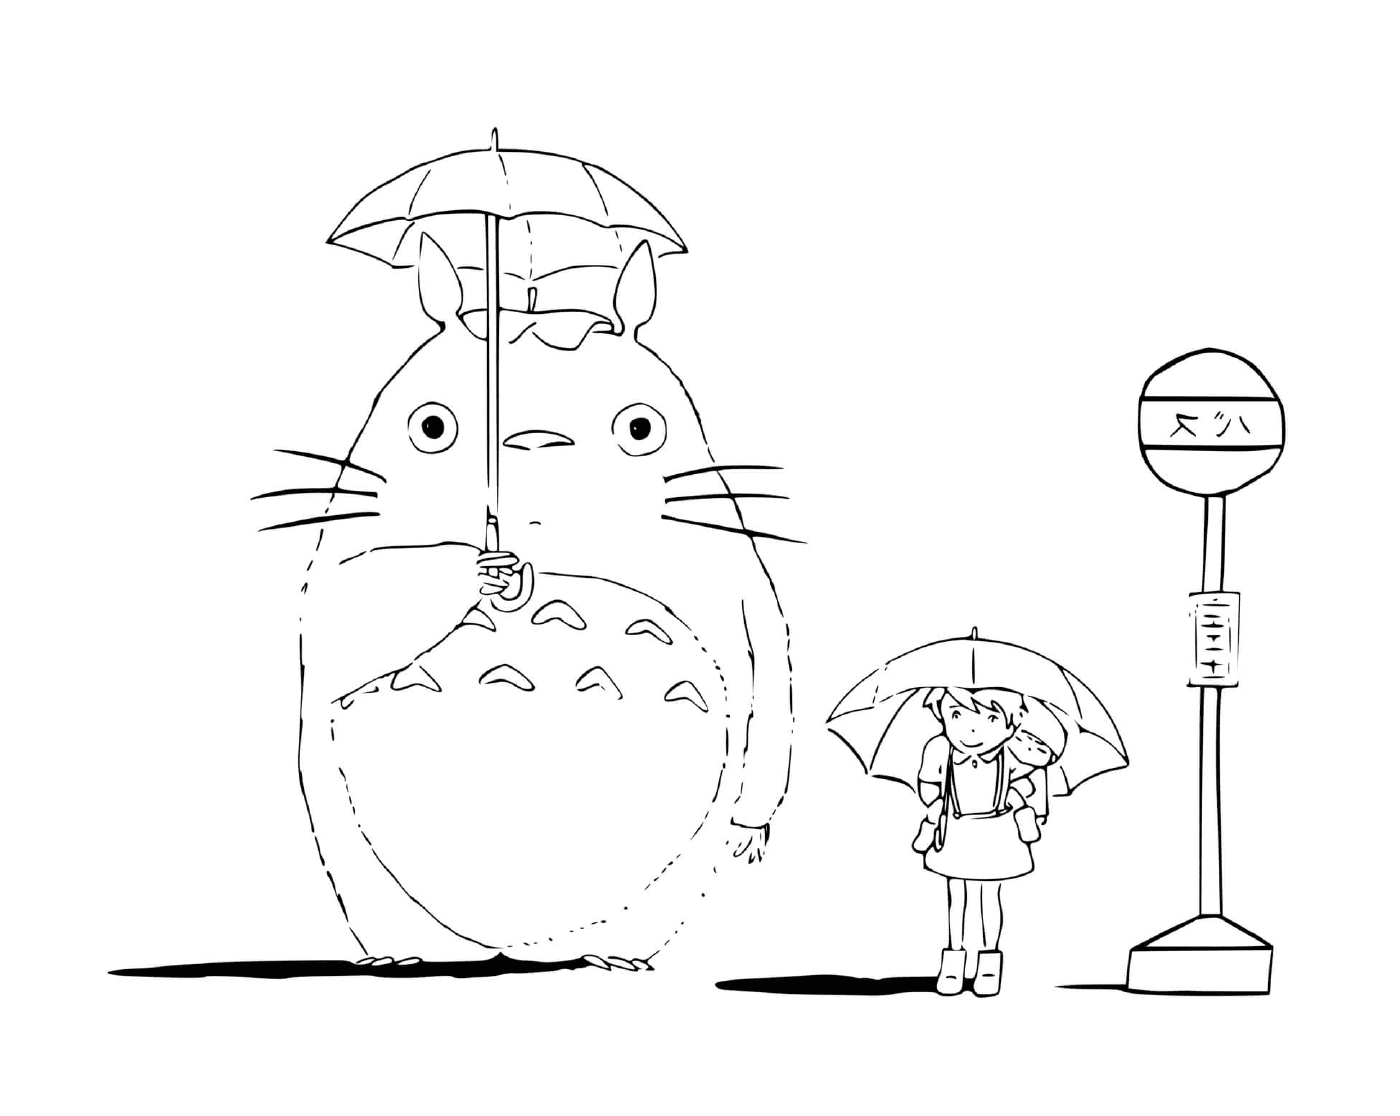  Totoro segurando um guarda-chuva 